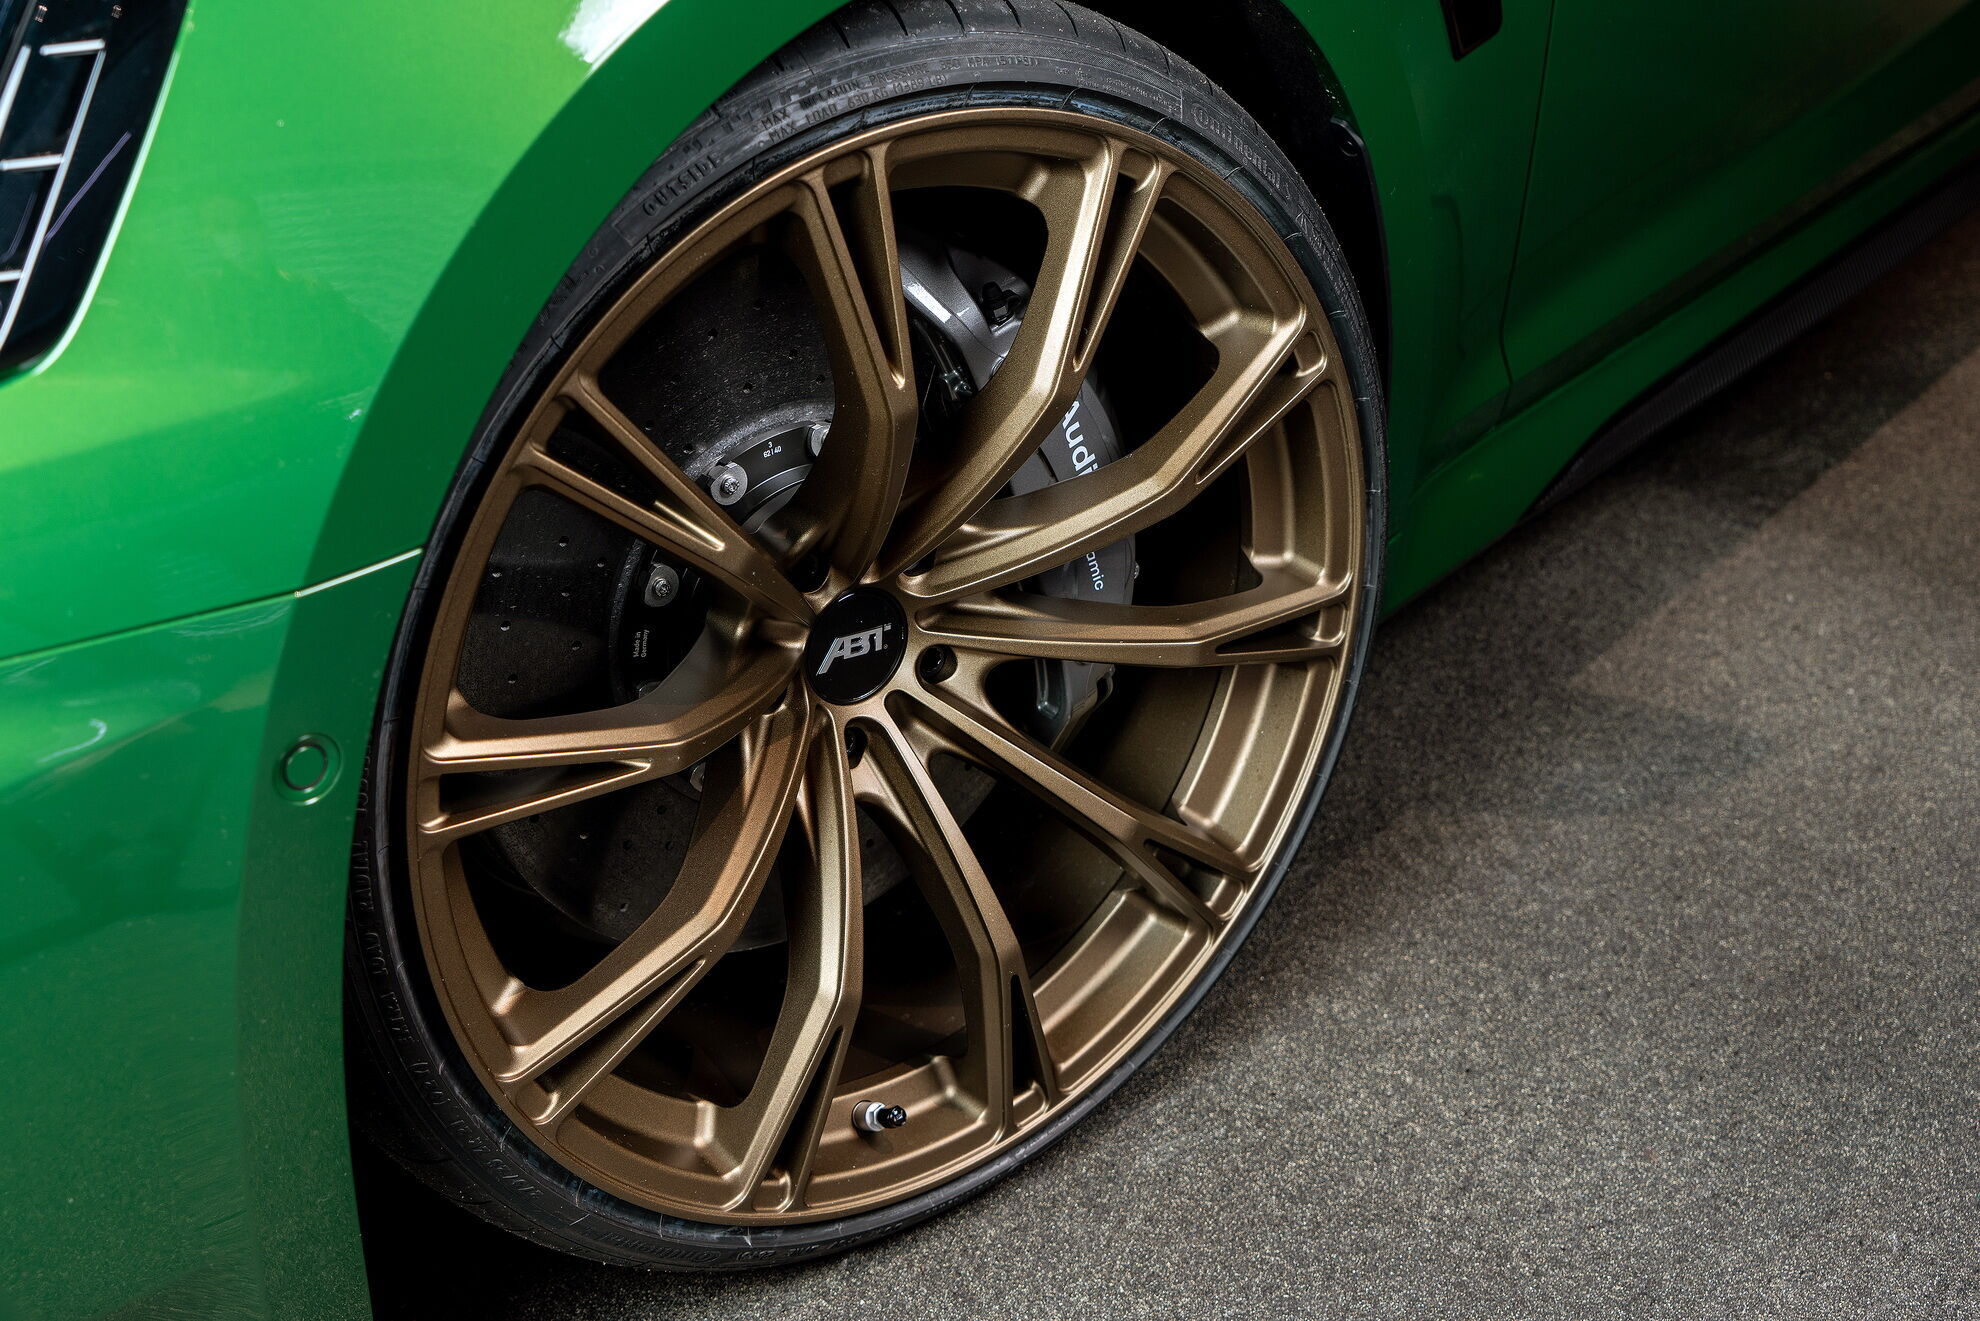 Жжурные 21-дюймовые легкосплавные диски Abt Sport GR особого цвета Racing Gold matt дополняют образ